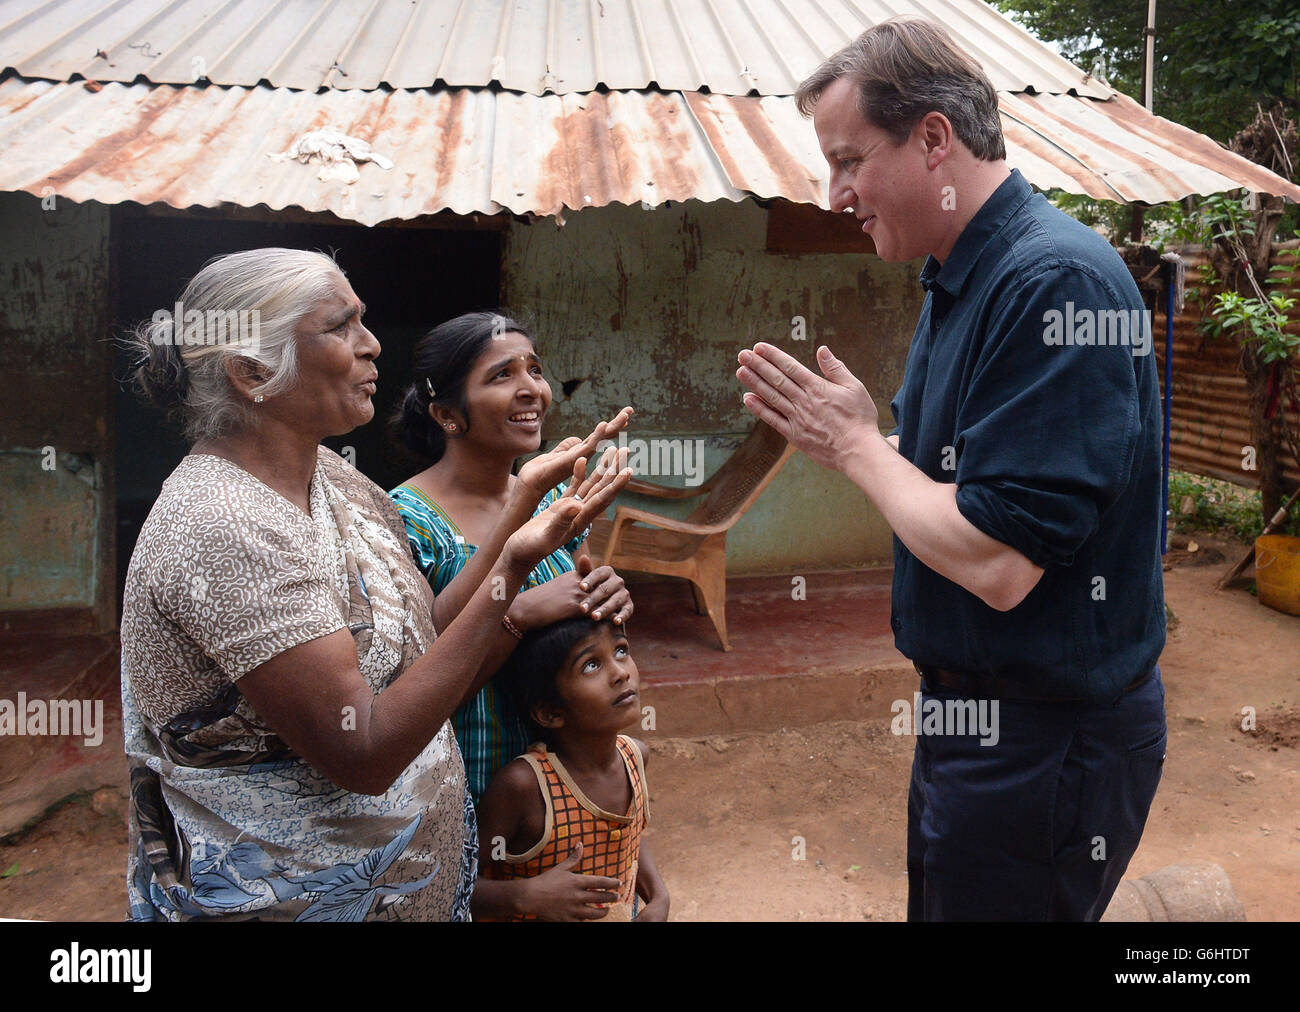 Le Premier ministre David Cameron rencontre le personnel du journal Uthayan de Jaffna, dans le nord du Sri Lanka, qui a été fréquemment attaqué par les forces gouvernementales pendant la guerre civile de 26 ans. Banque D'Images